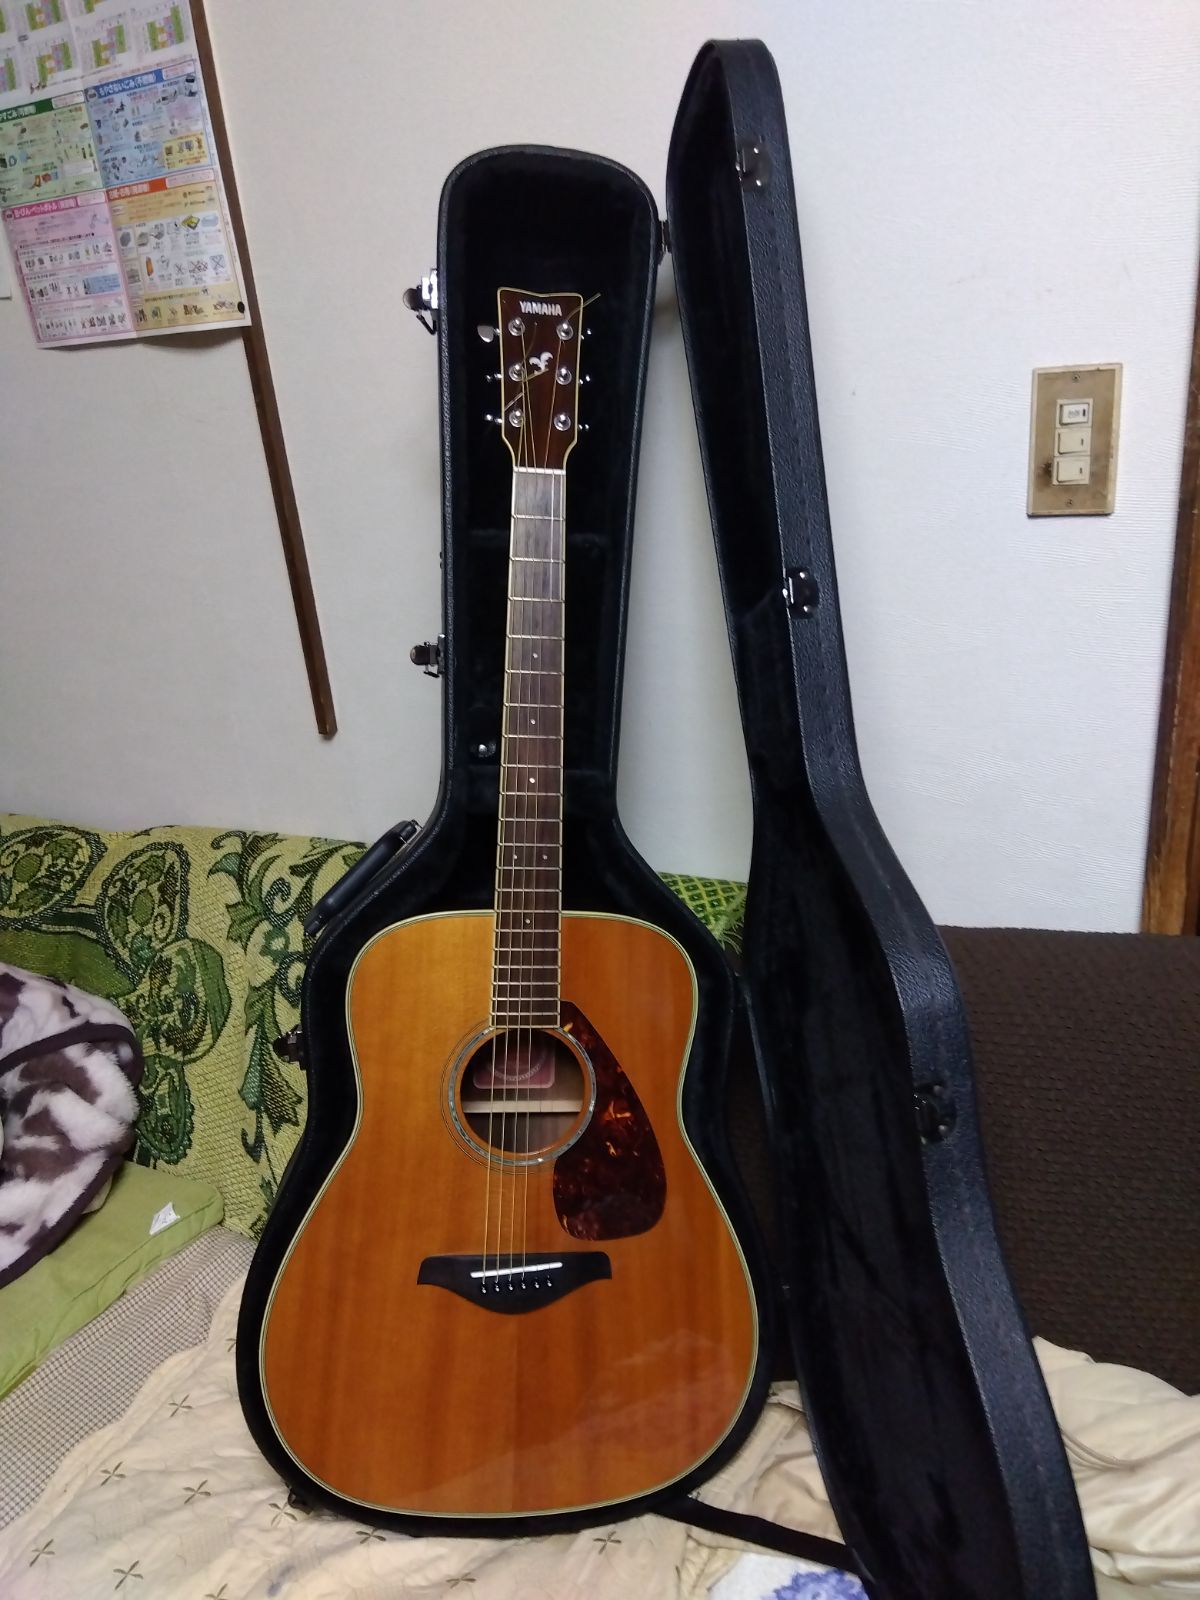 ヤマハアコースティックギター 上位機種 FG-730S - darkflix.blog.br